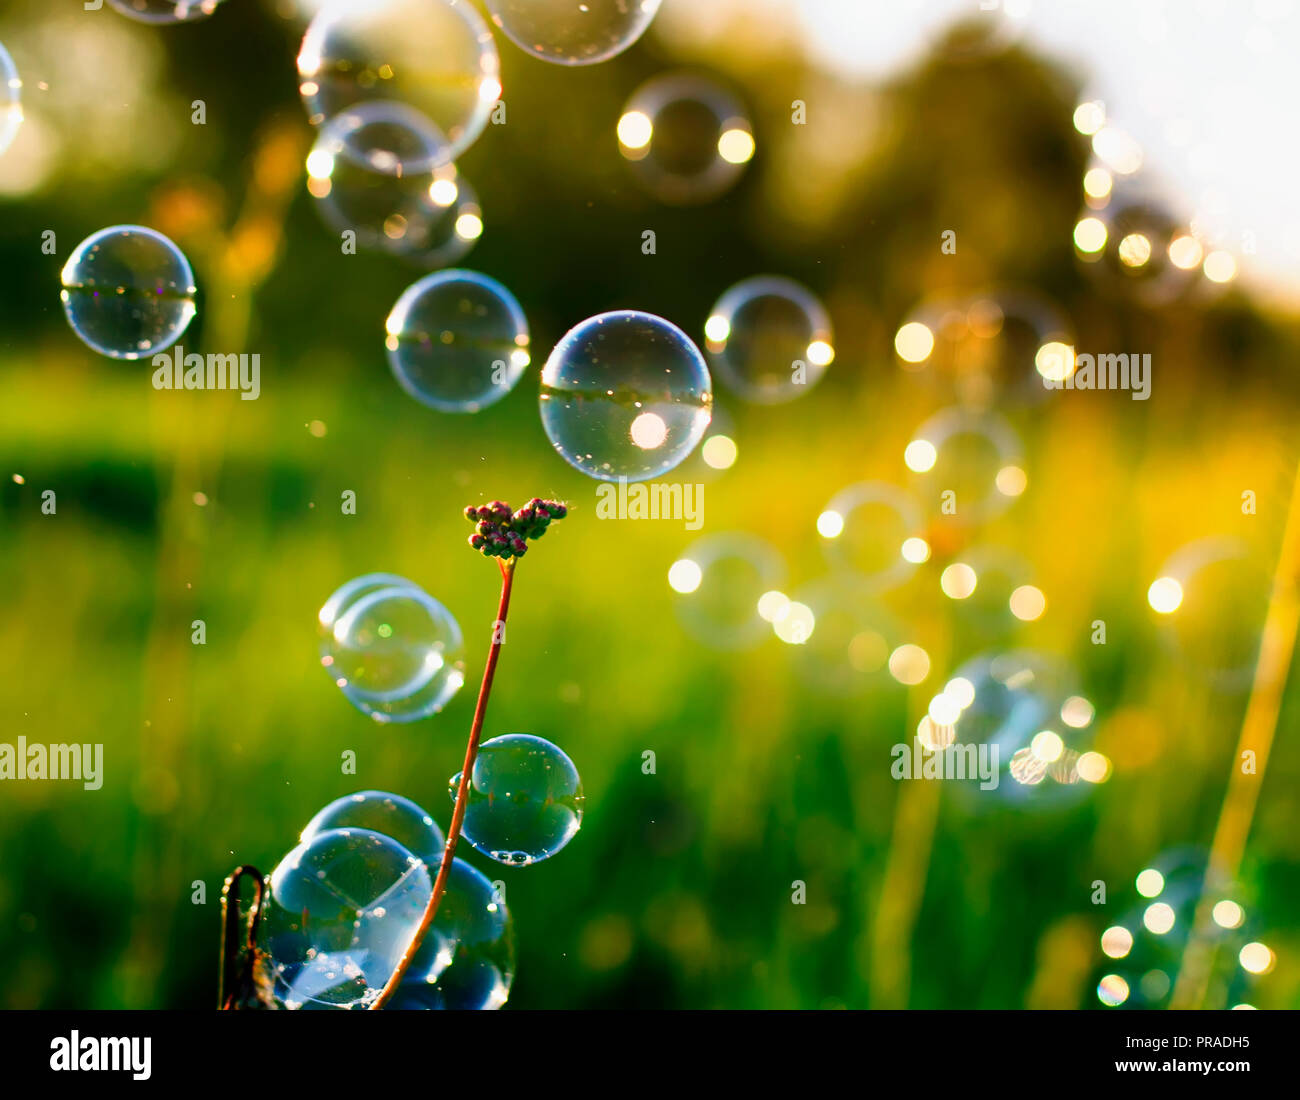 Natürlichen schönen Hintergrund mit hell schimmernde Seifenblasen fliegen  und hängen auf grünem Gras sonnigen Sommer Wiese Stockfotografie - Alamy